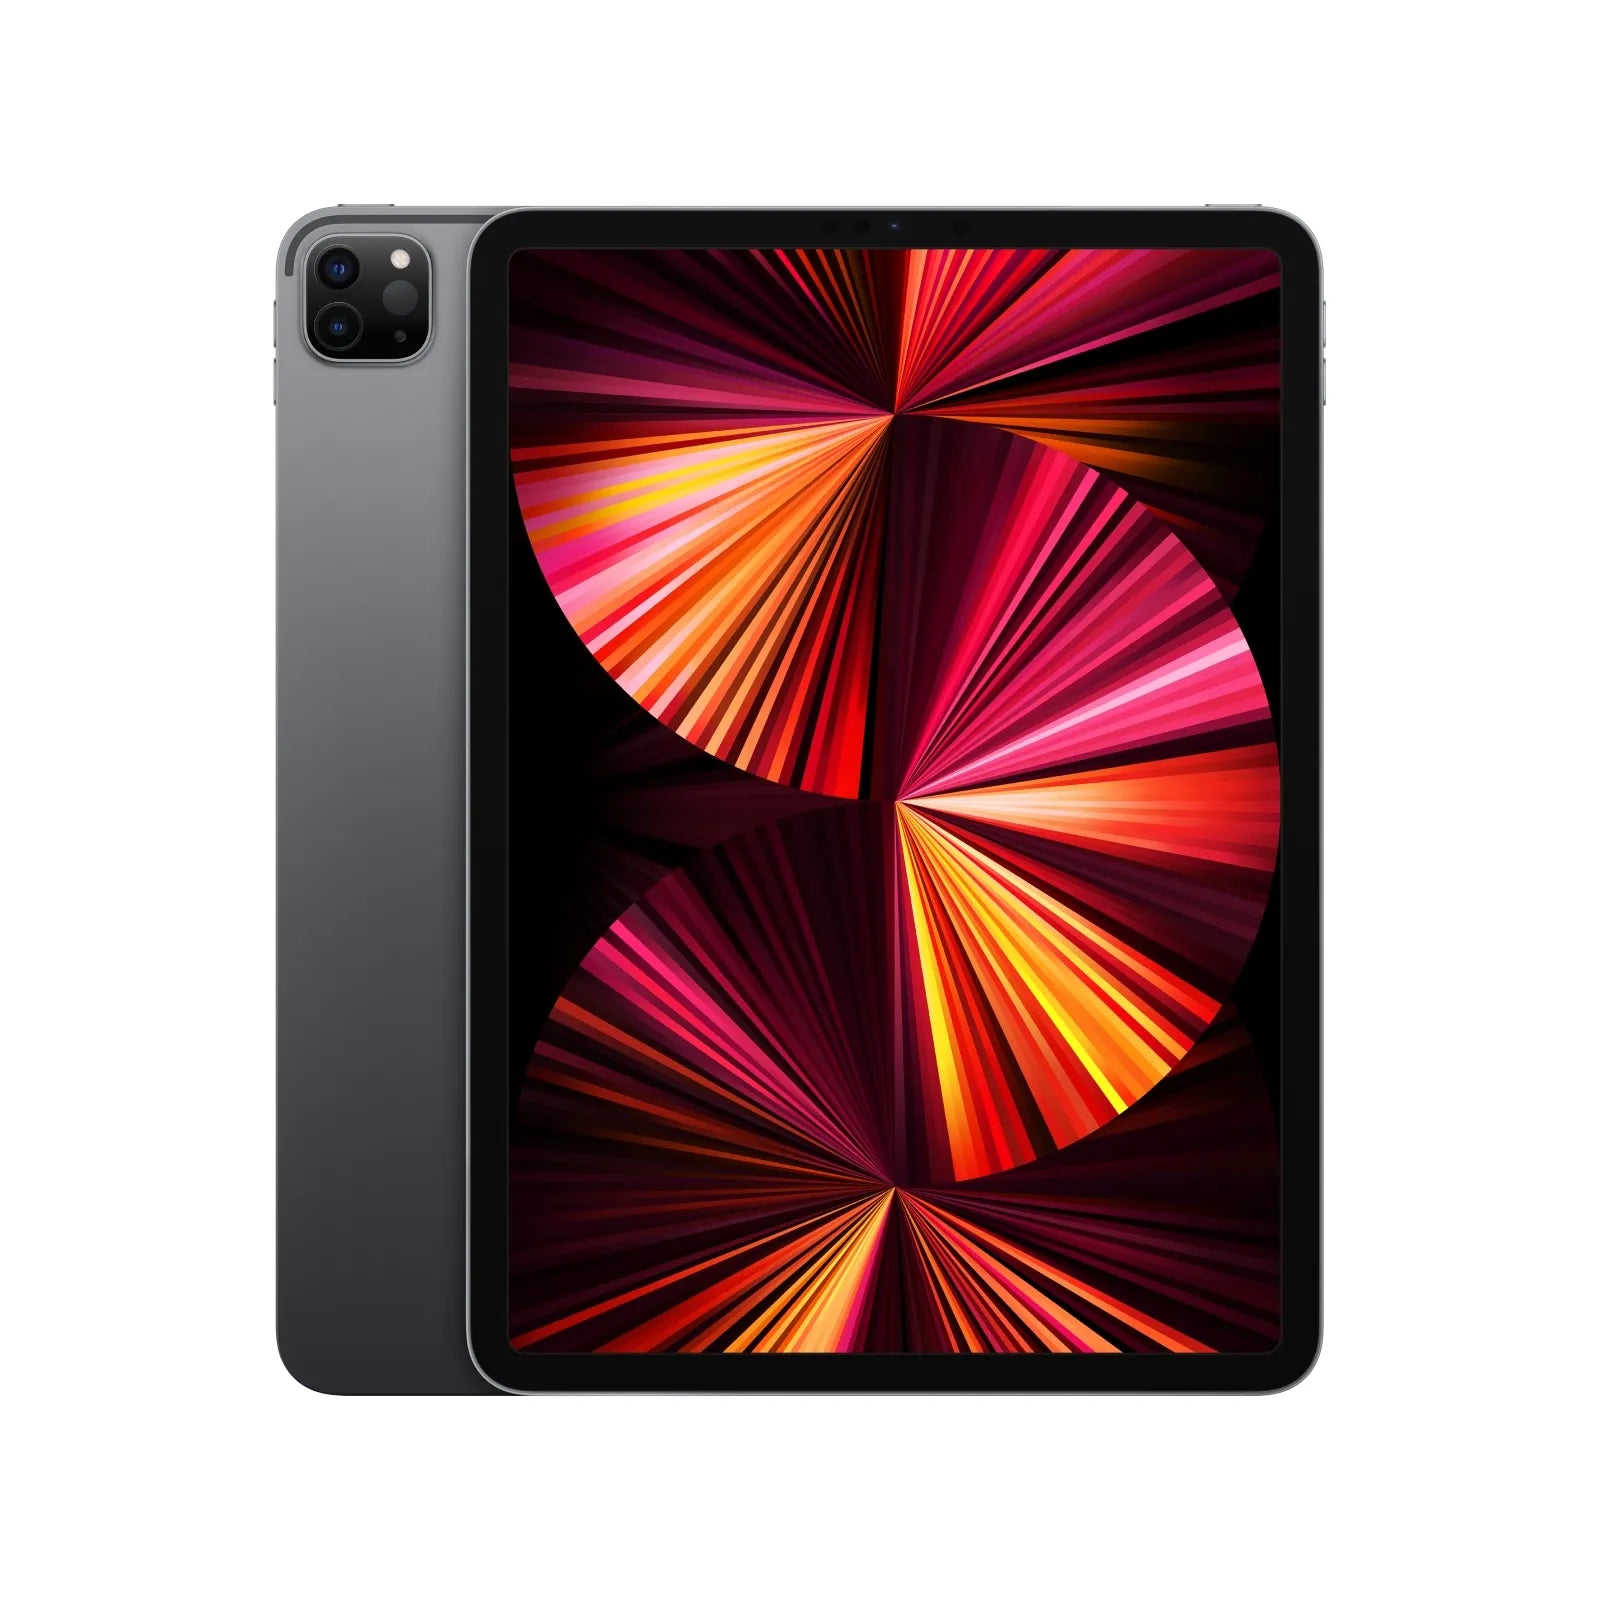  2018 Apple iPad Pro (12.9-inch, Wi-Fi, 64GB) - Silver